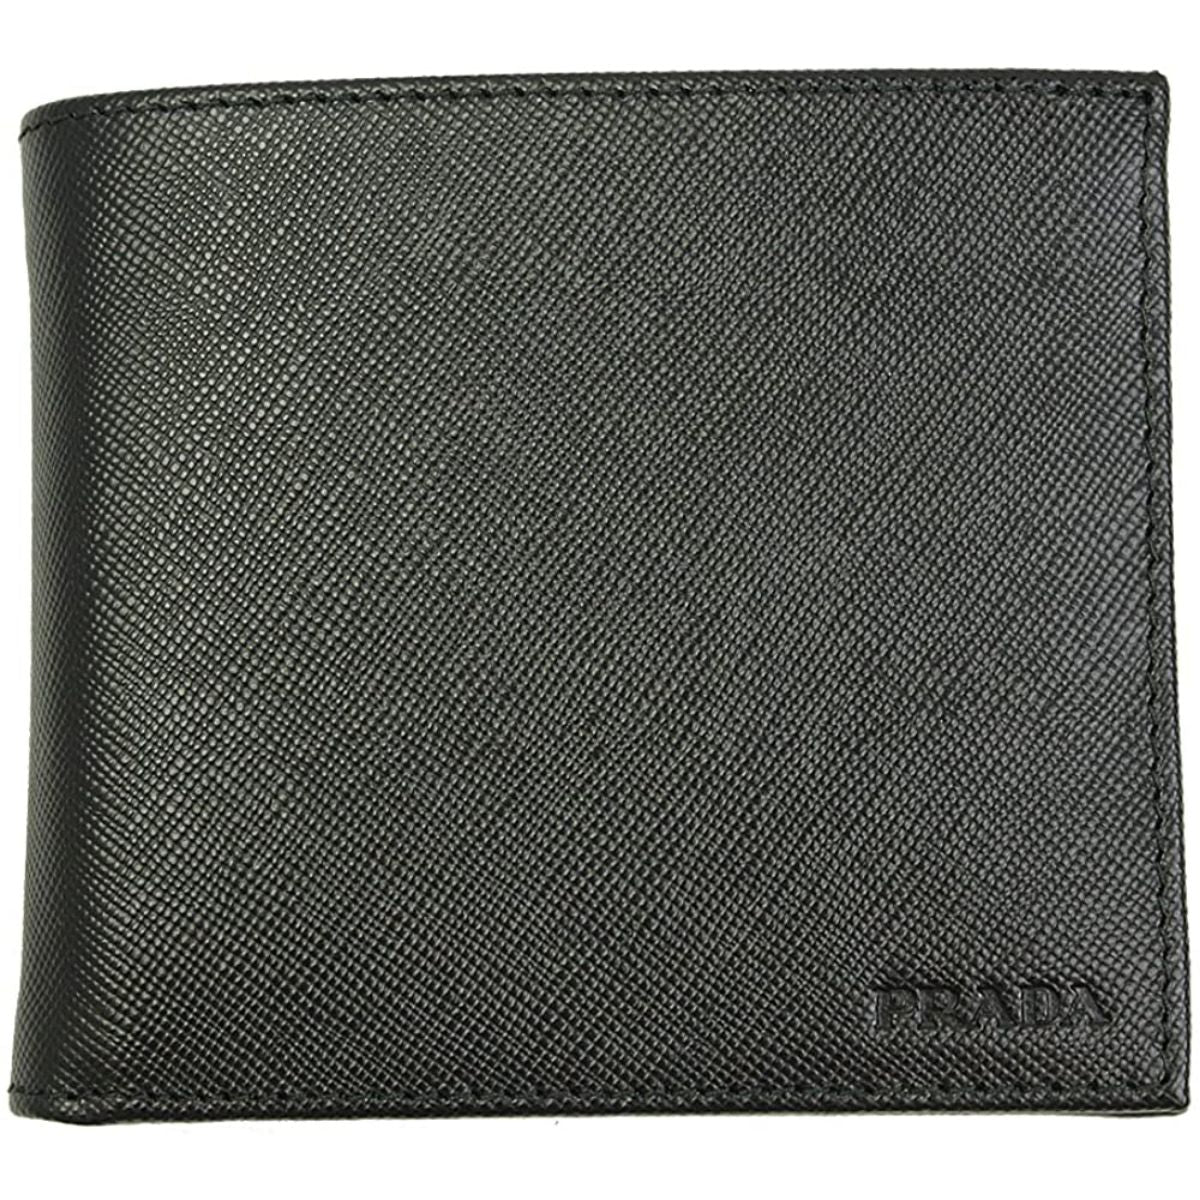 Prada Men's Black Saffiano Leather Logo Billfold Bifold Wallet - LUXURYMRKT